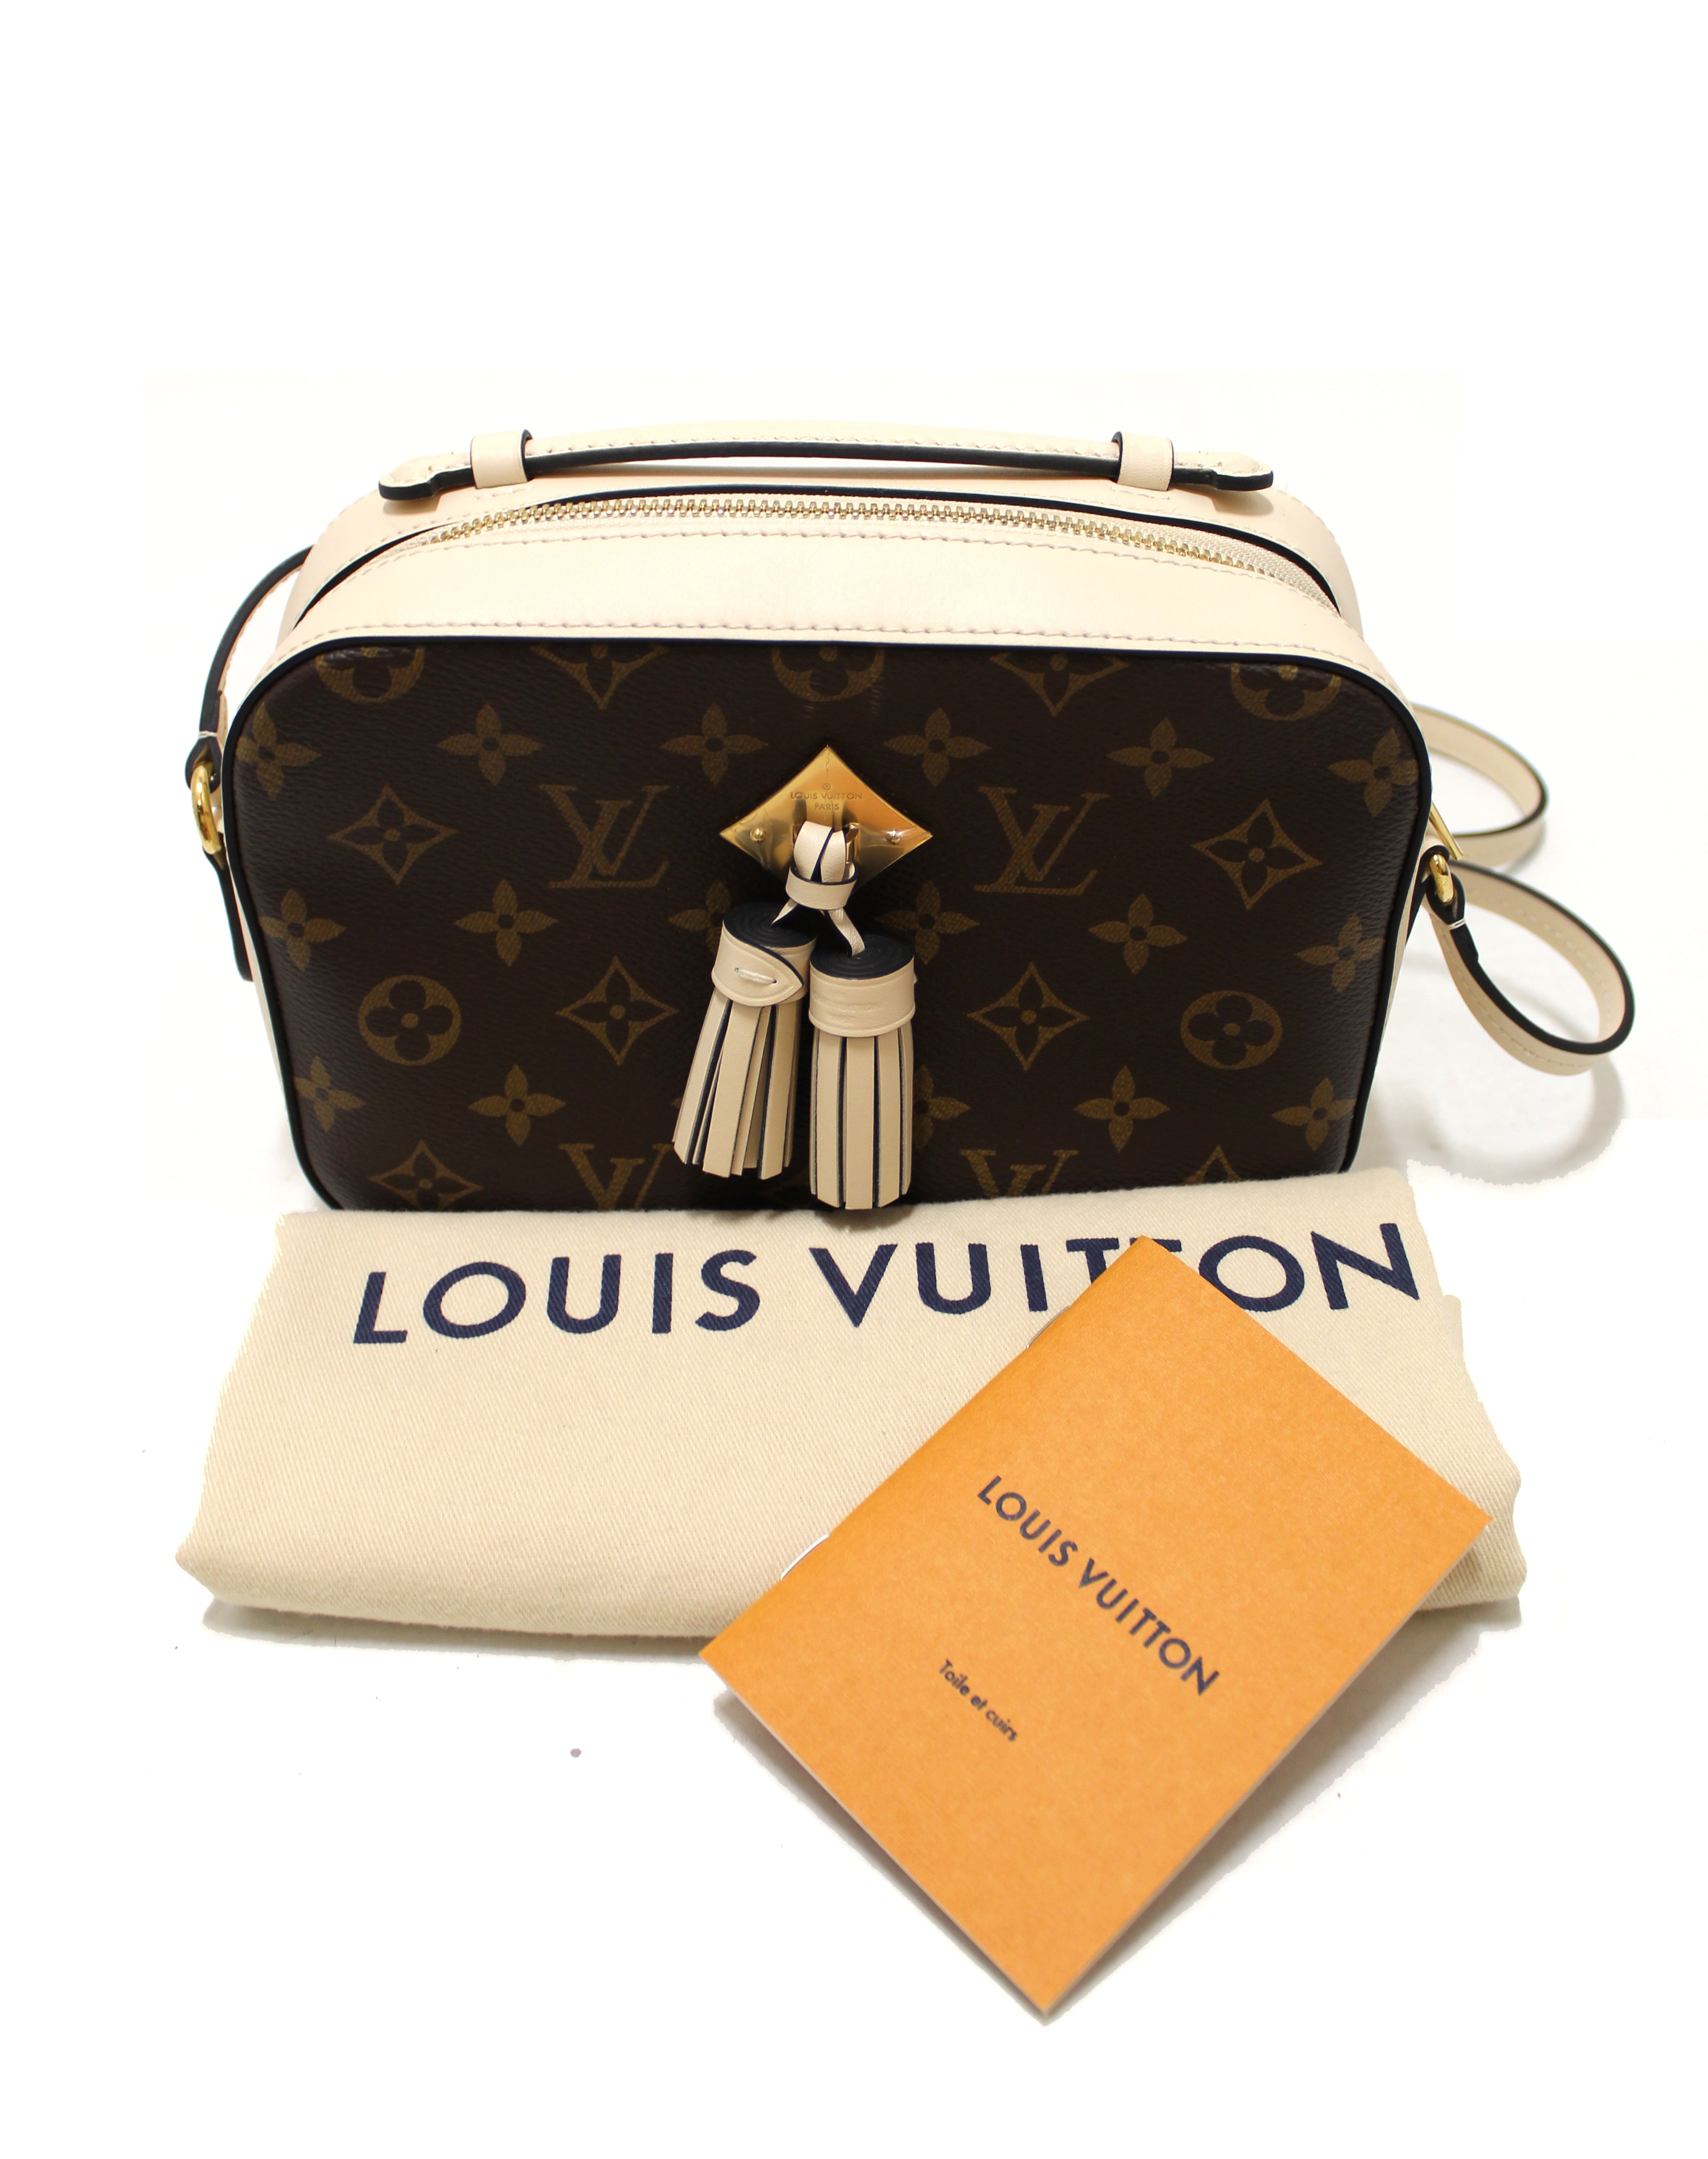 Louis Vuitton Saintonge Handbag Authentic